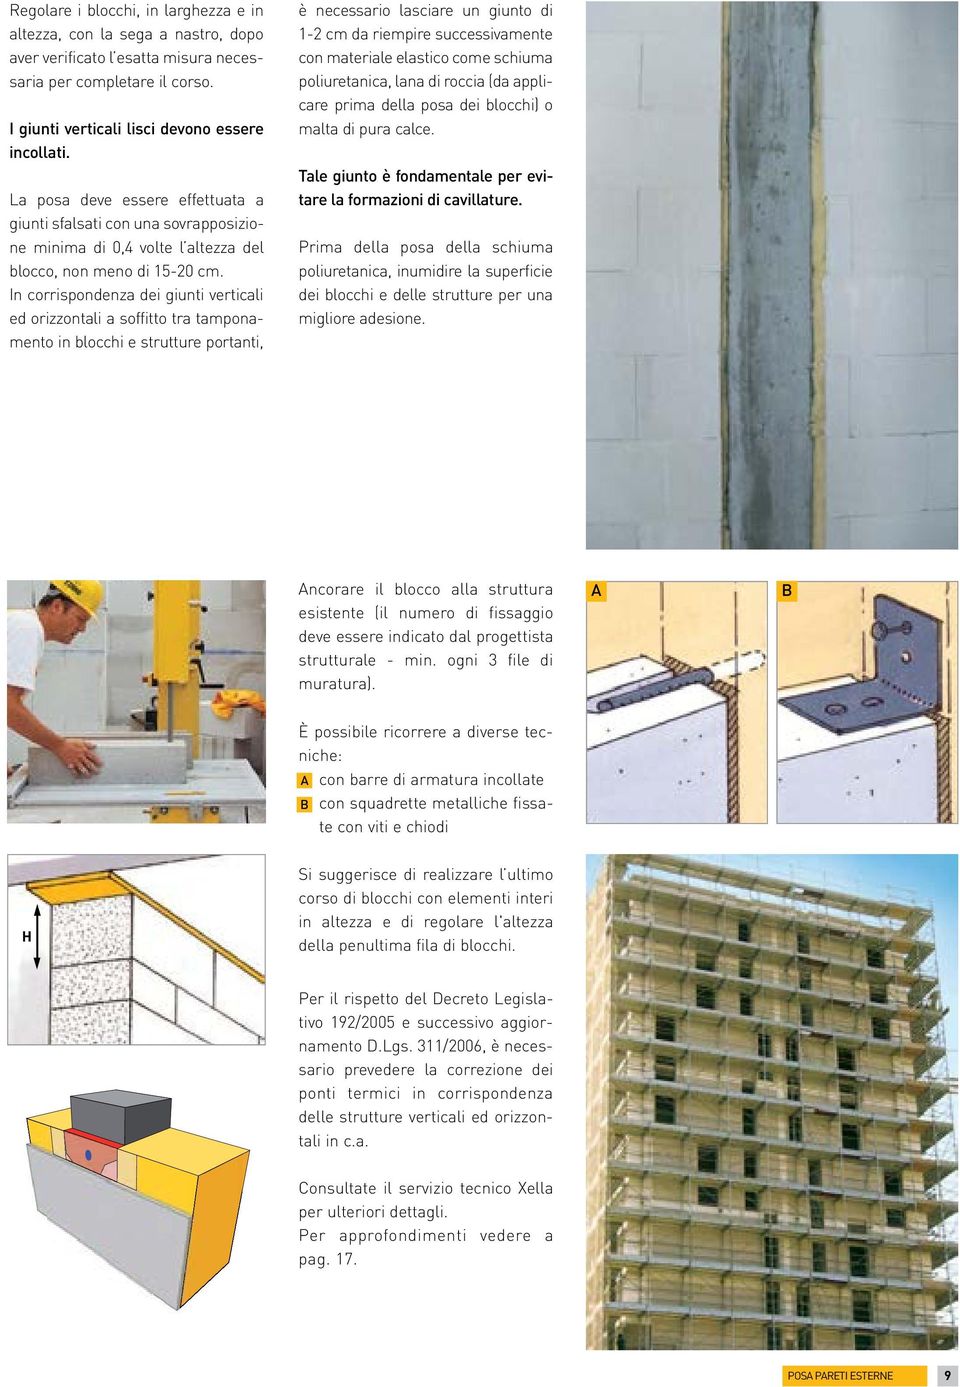 In corrispondenza dei giunti verticali ed orizzontali a soffitto tra tamponamento in blocchi e strutture portanti, è necessario lasciare un giunto di 1-2 cm da riempire successivamente con materiale